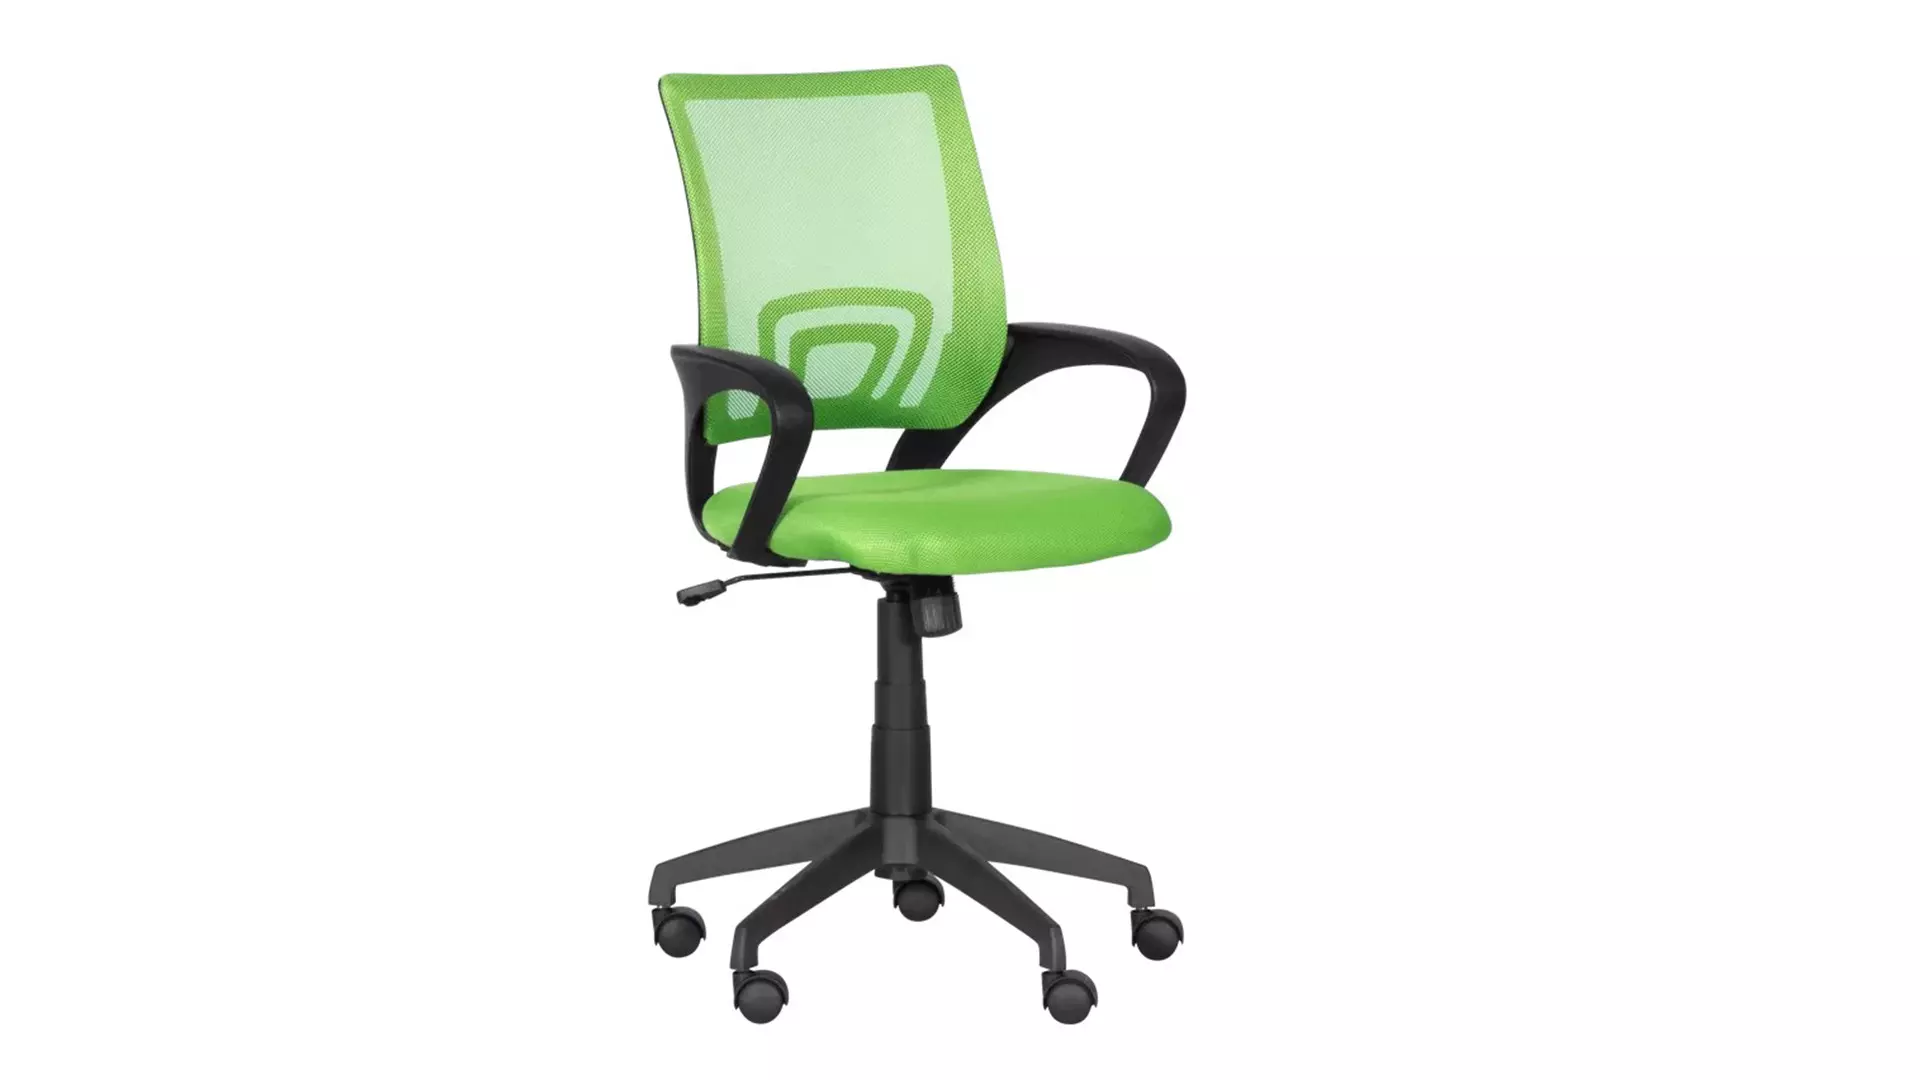 Работен офис стол Carmen 7050 зелен